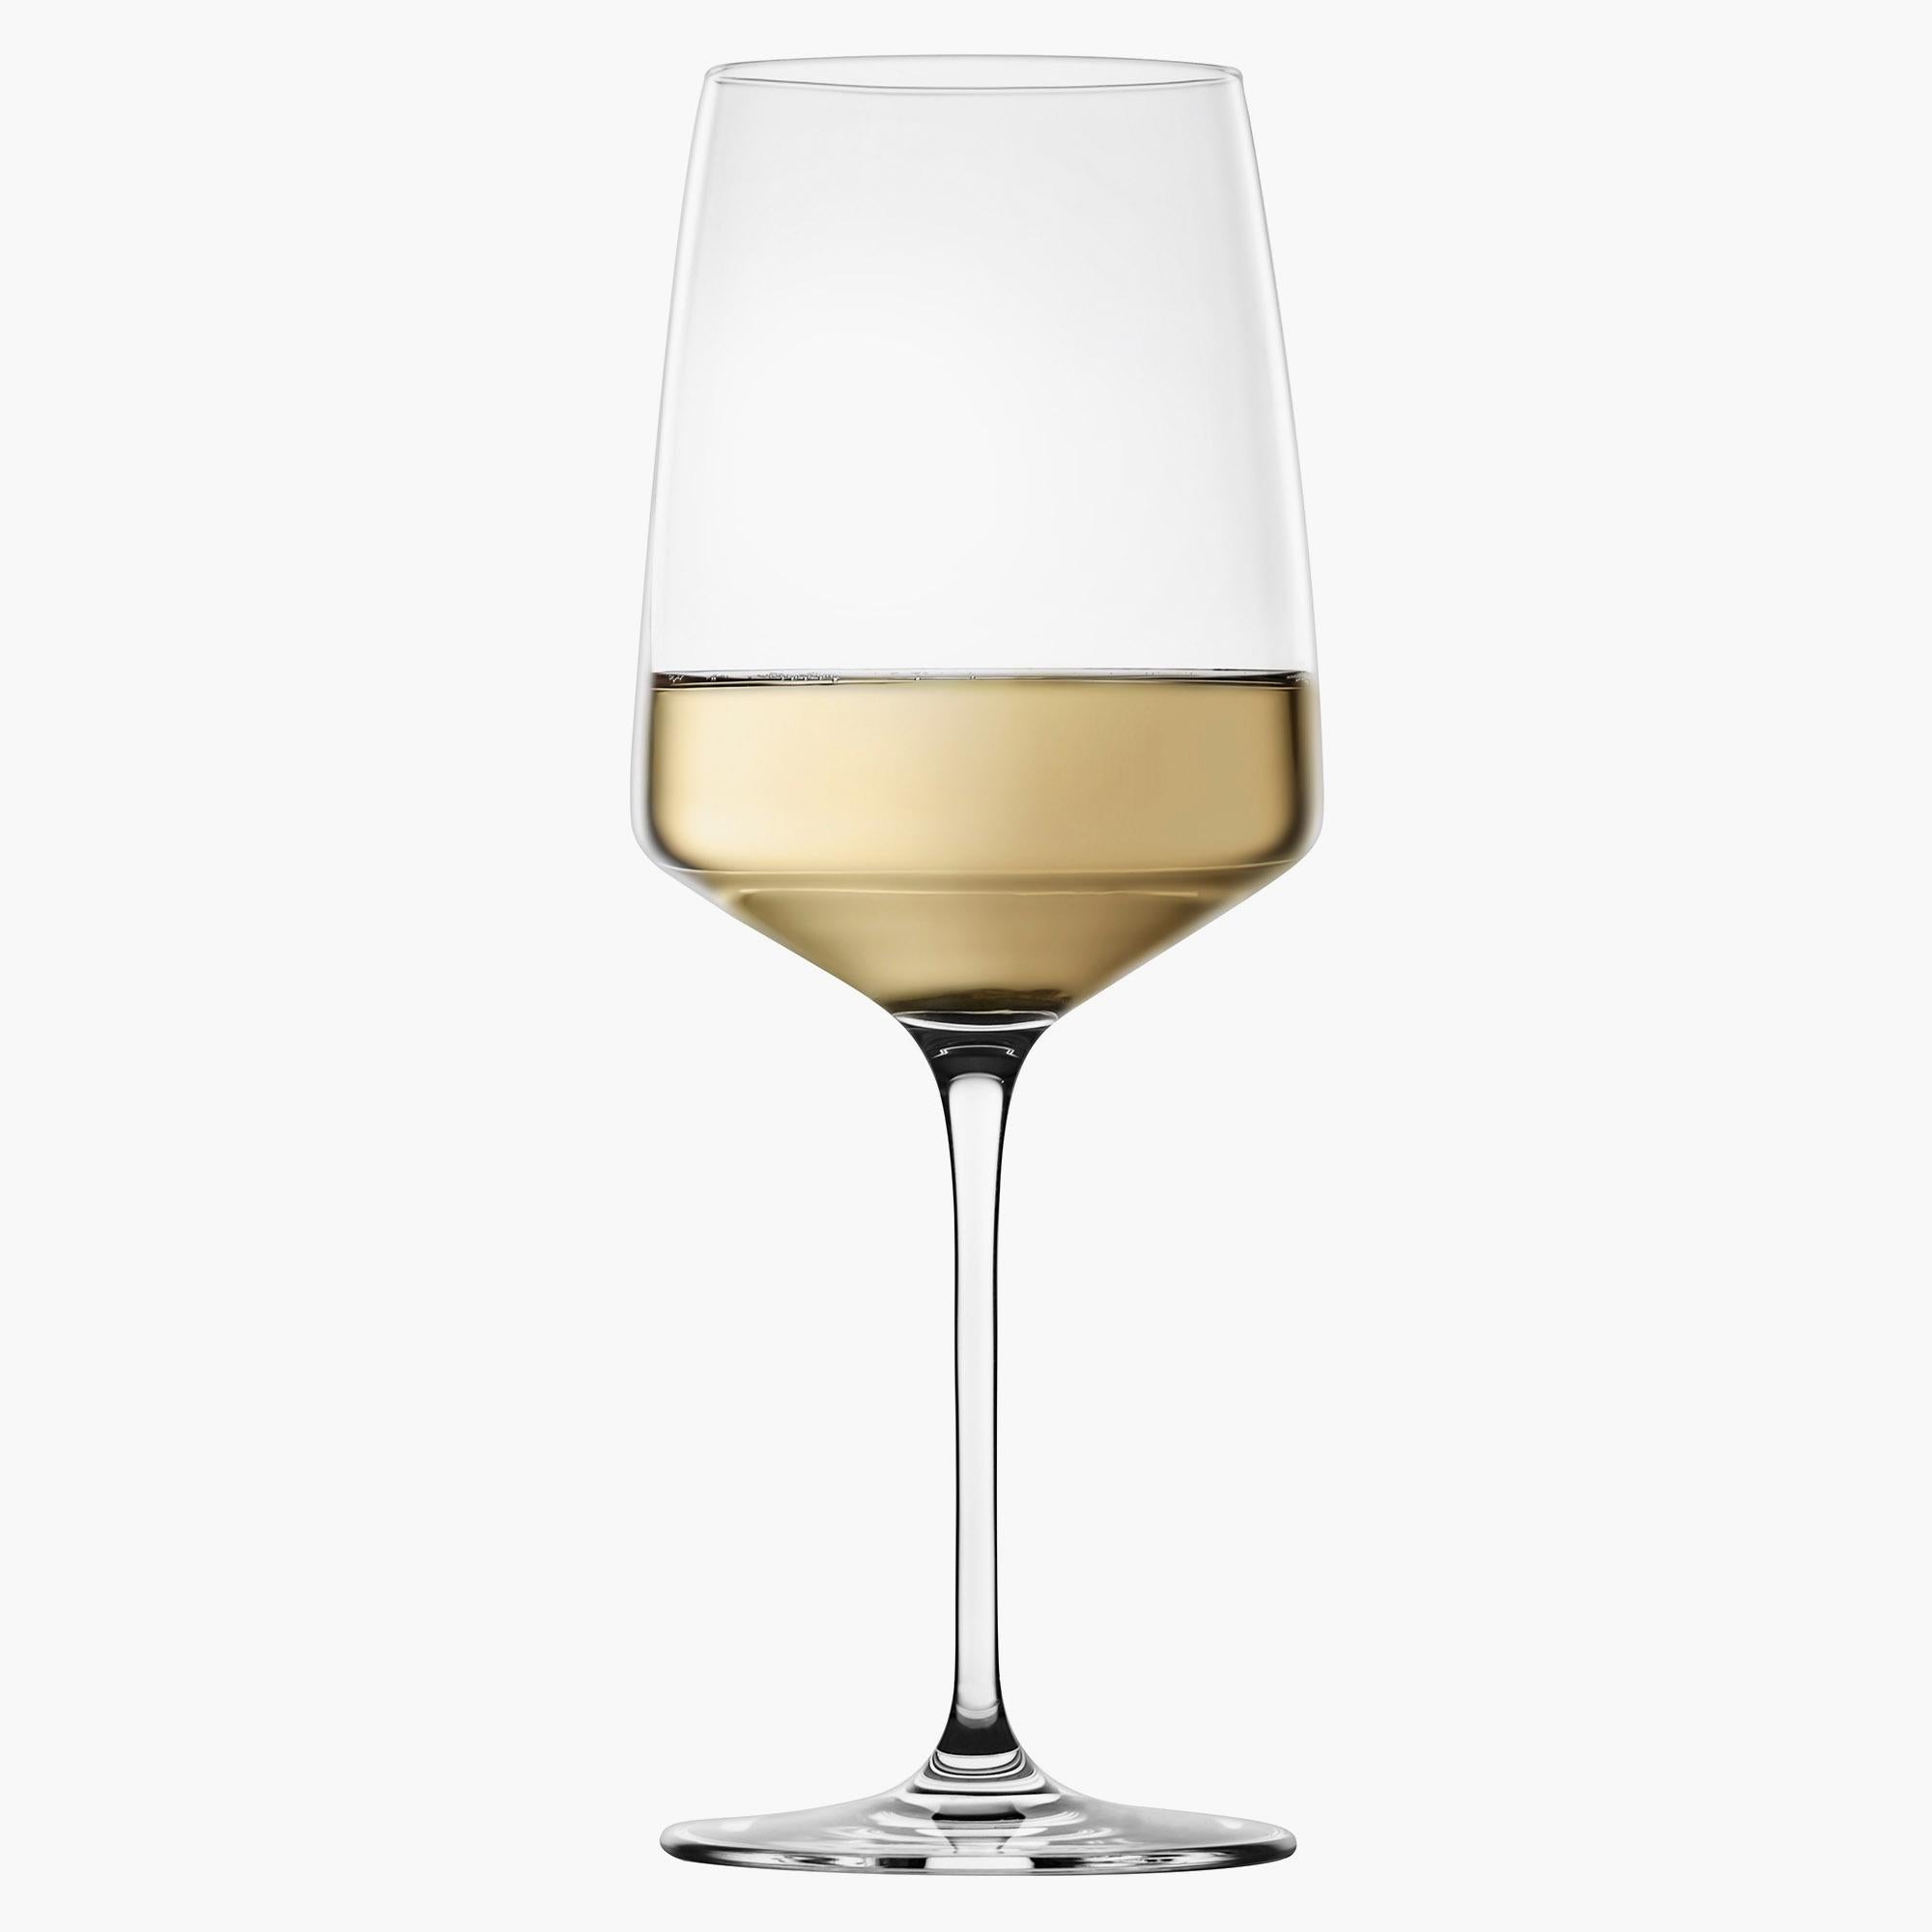 Set of Six 17.5-OZ White Wine Glasses